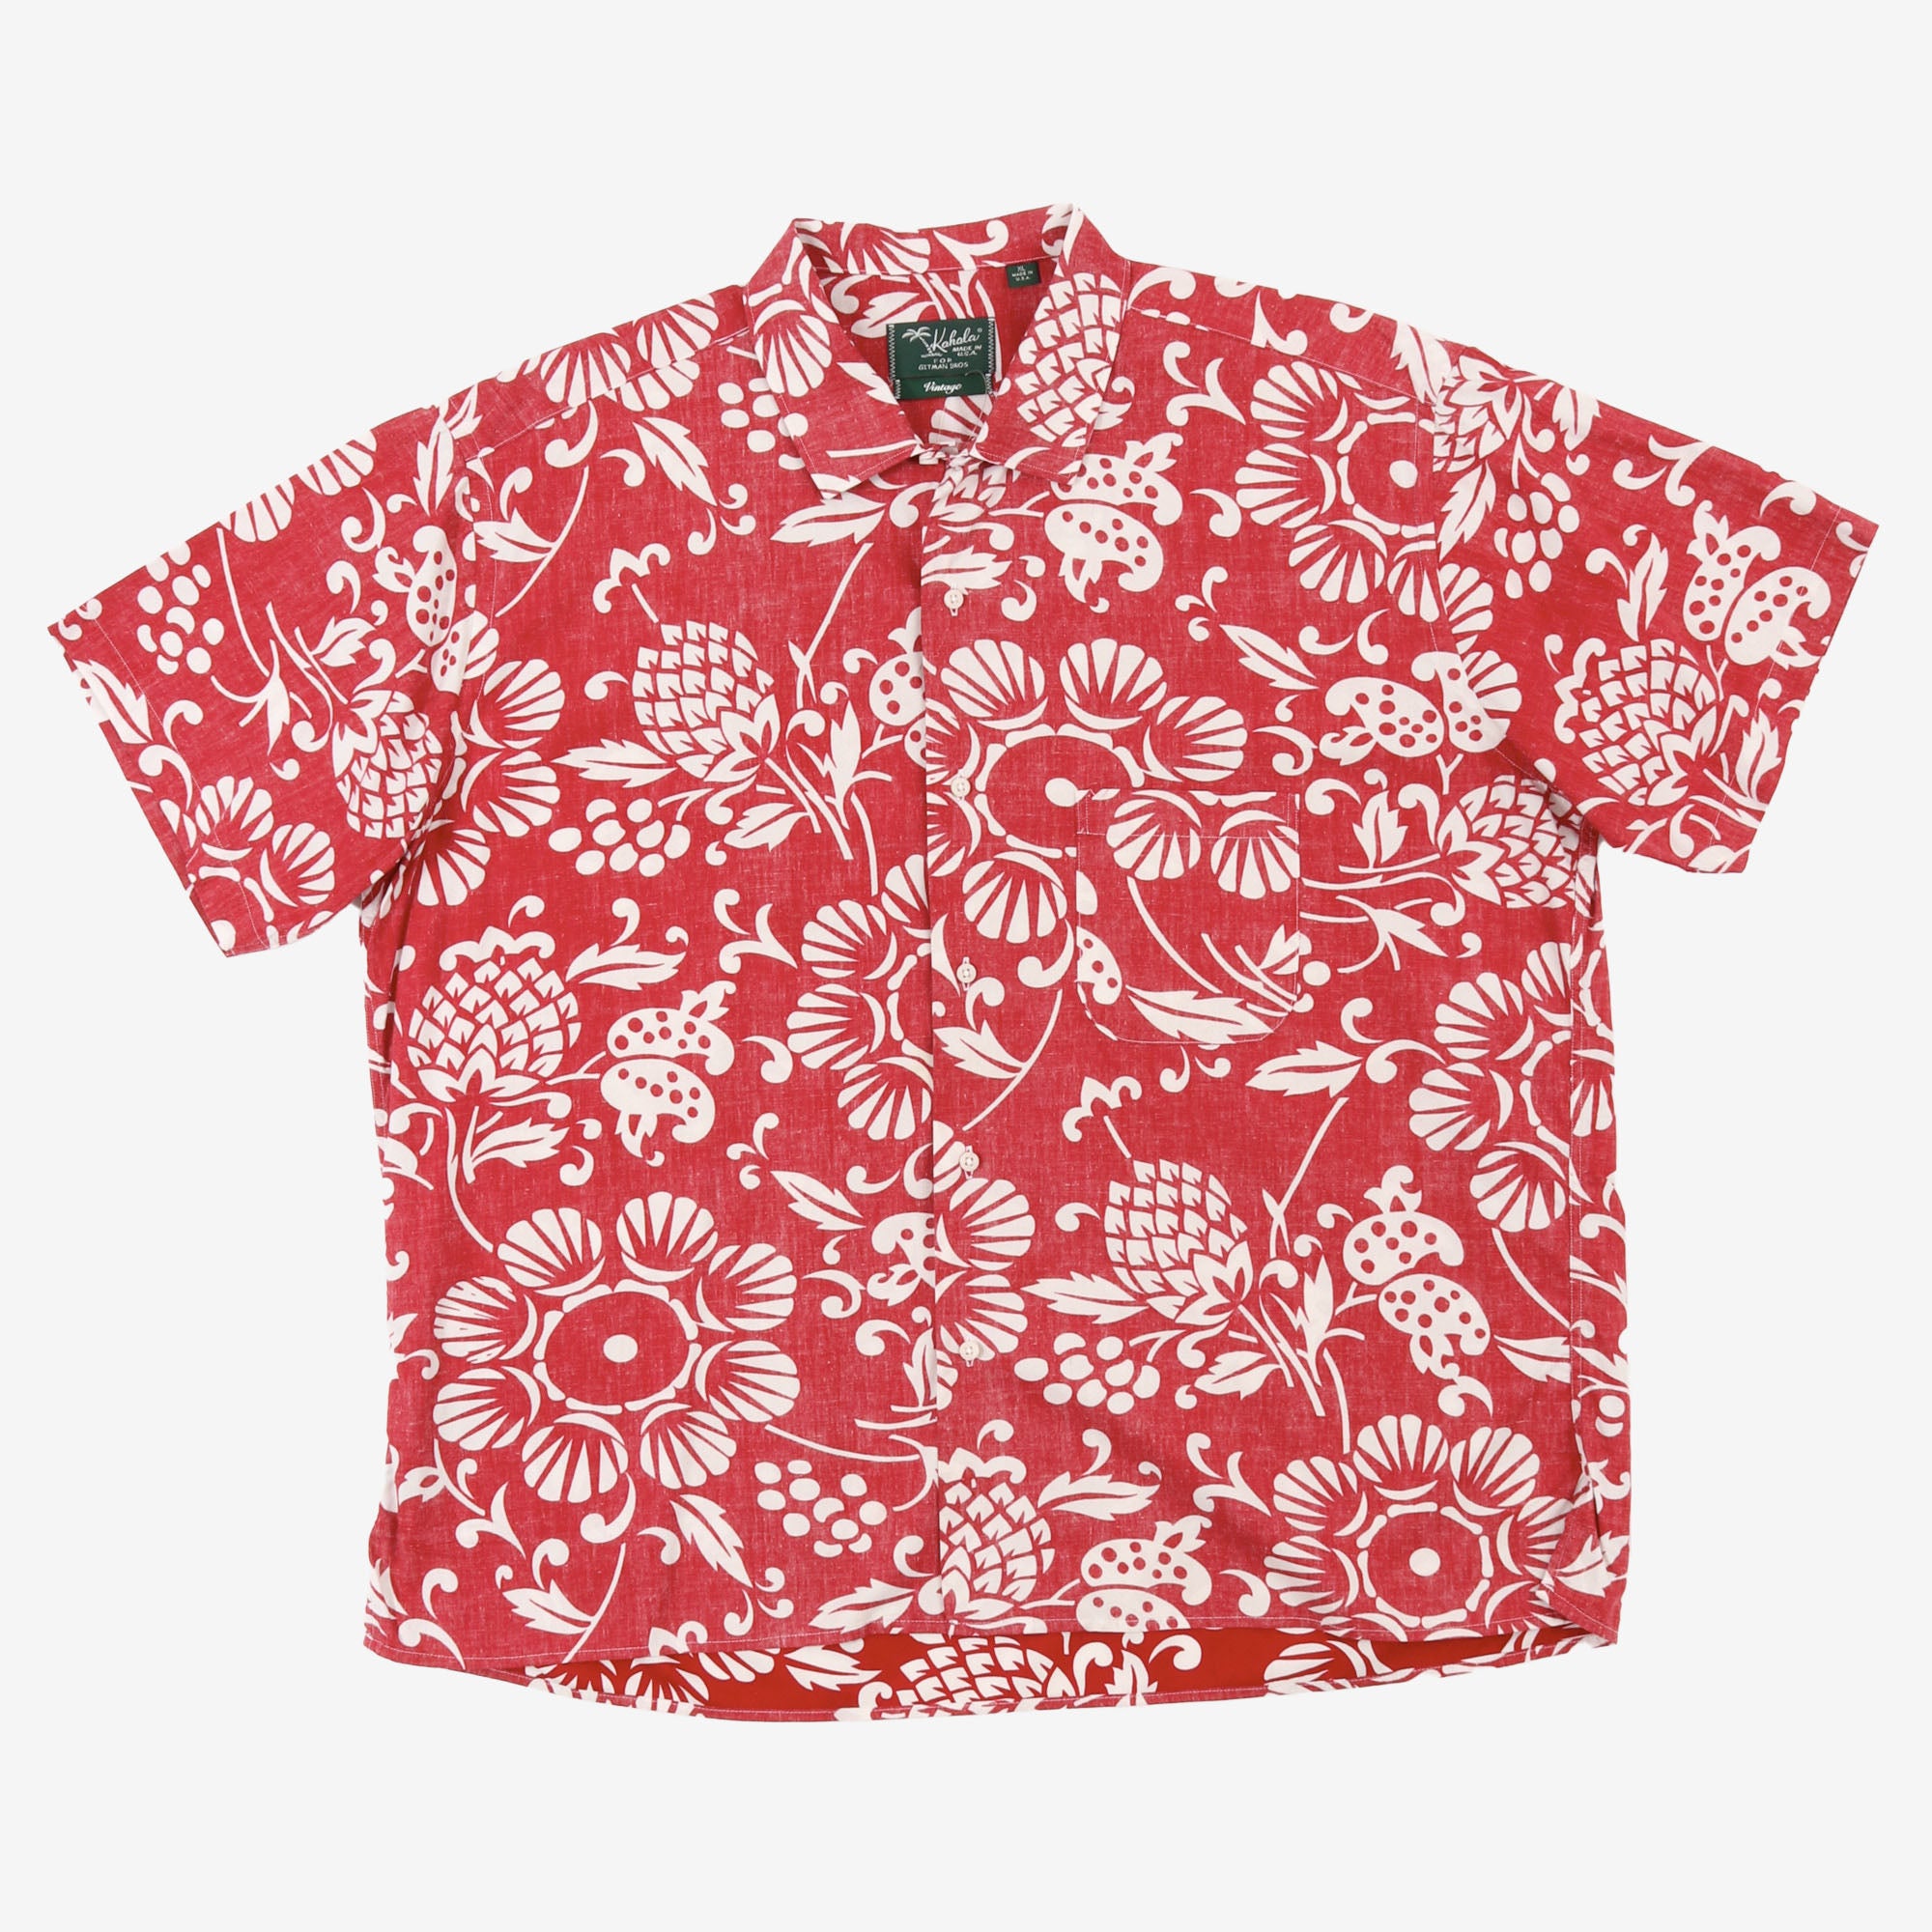 Hawaiian T-Shirt